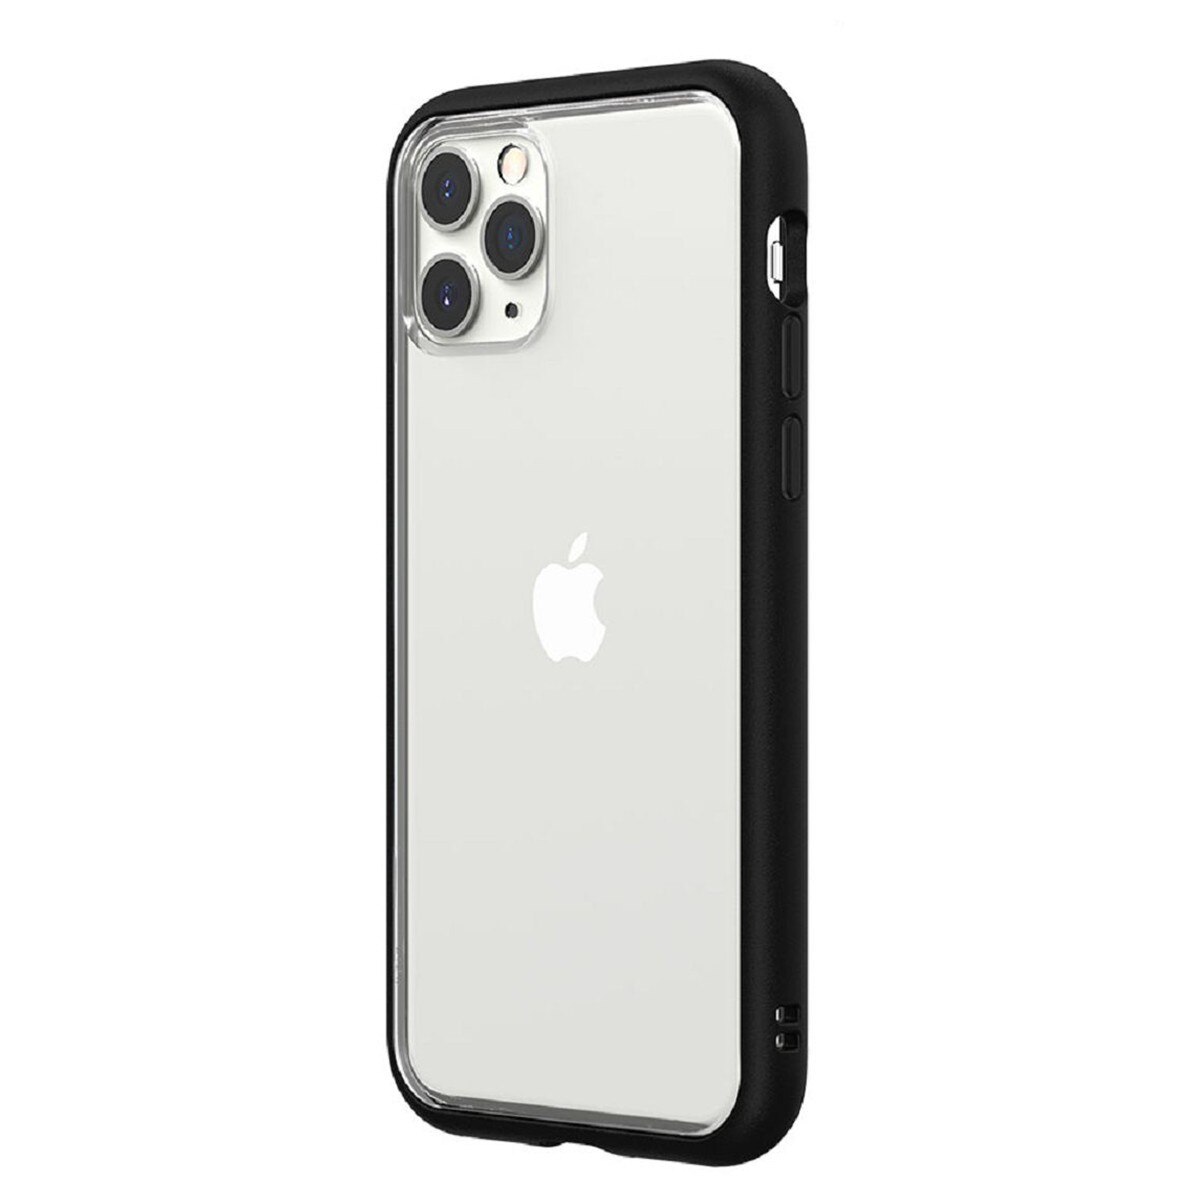 犀牛盾 iPhone 11 Pro Max Mod NX 手機殼 + 耐衝擊正面保護貼 黑